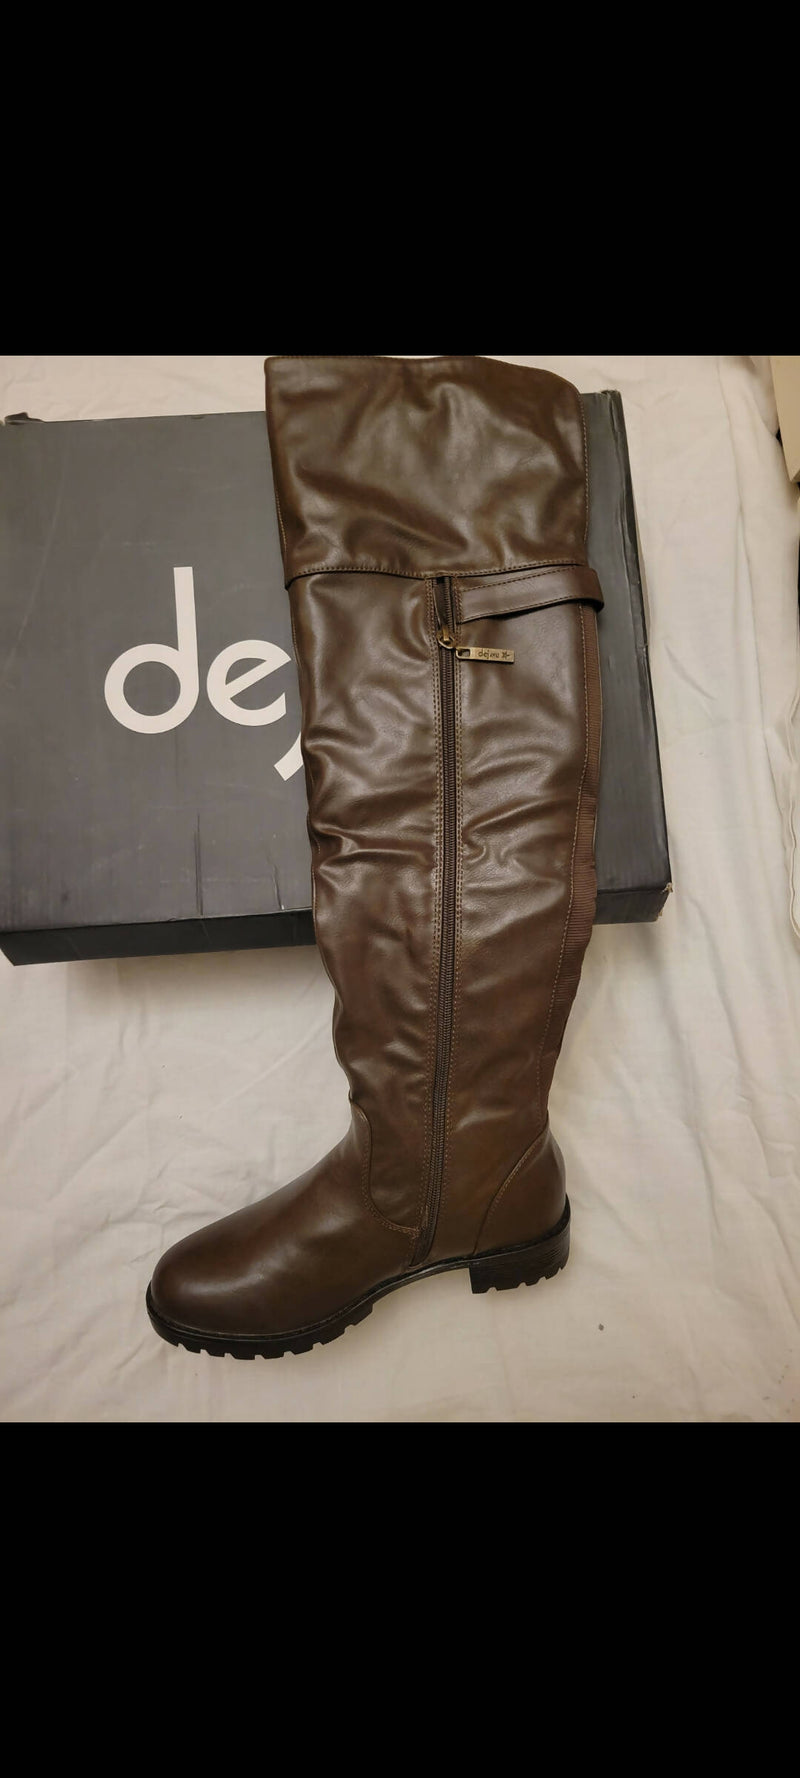 NEW Dejavu Boots Size: 39